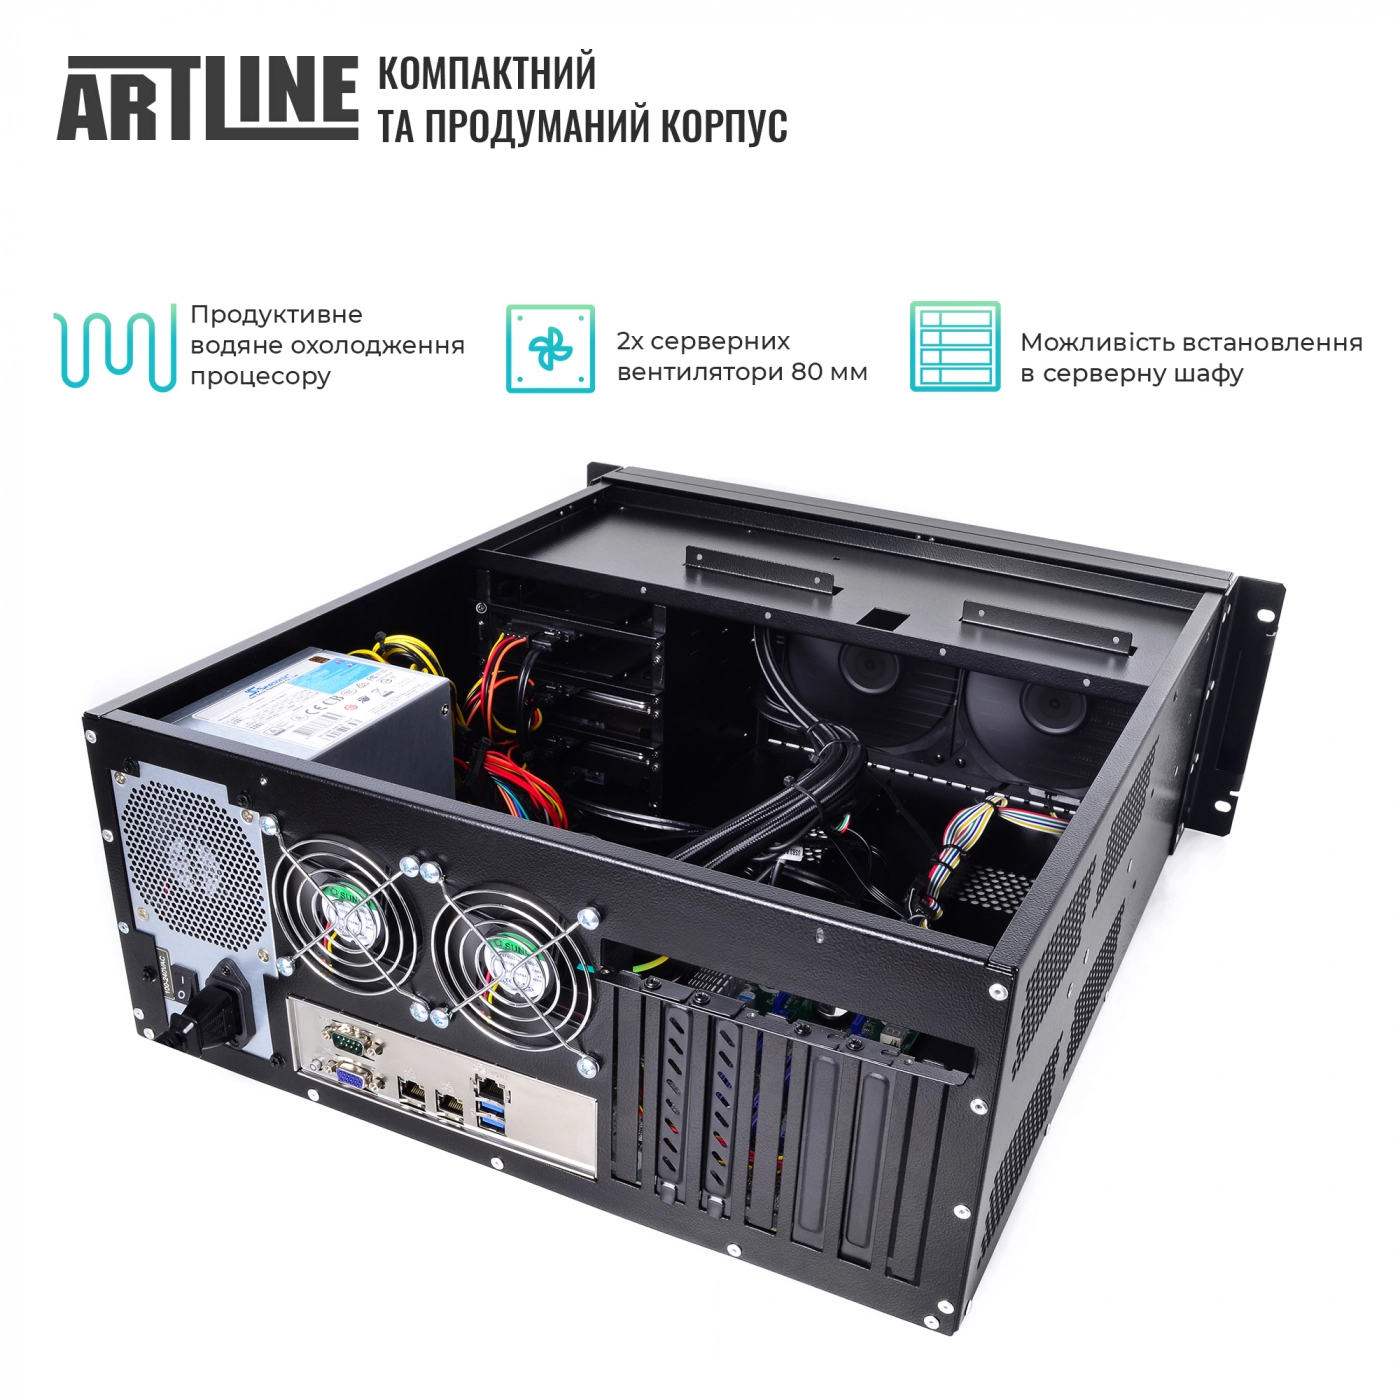 Купить Сервер ARTLINE Business R65v02 - фото 3